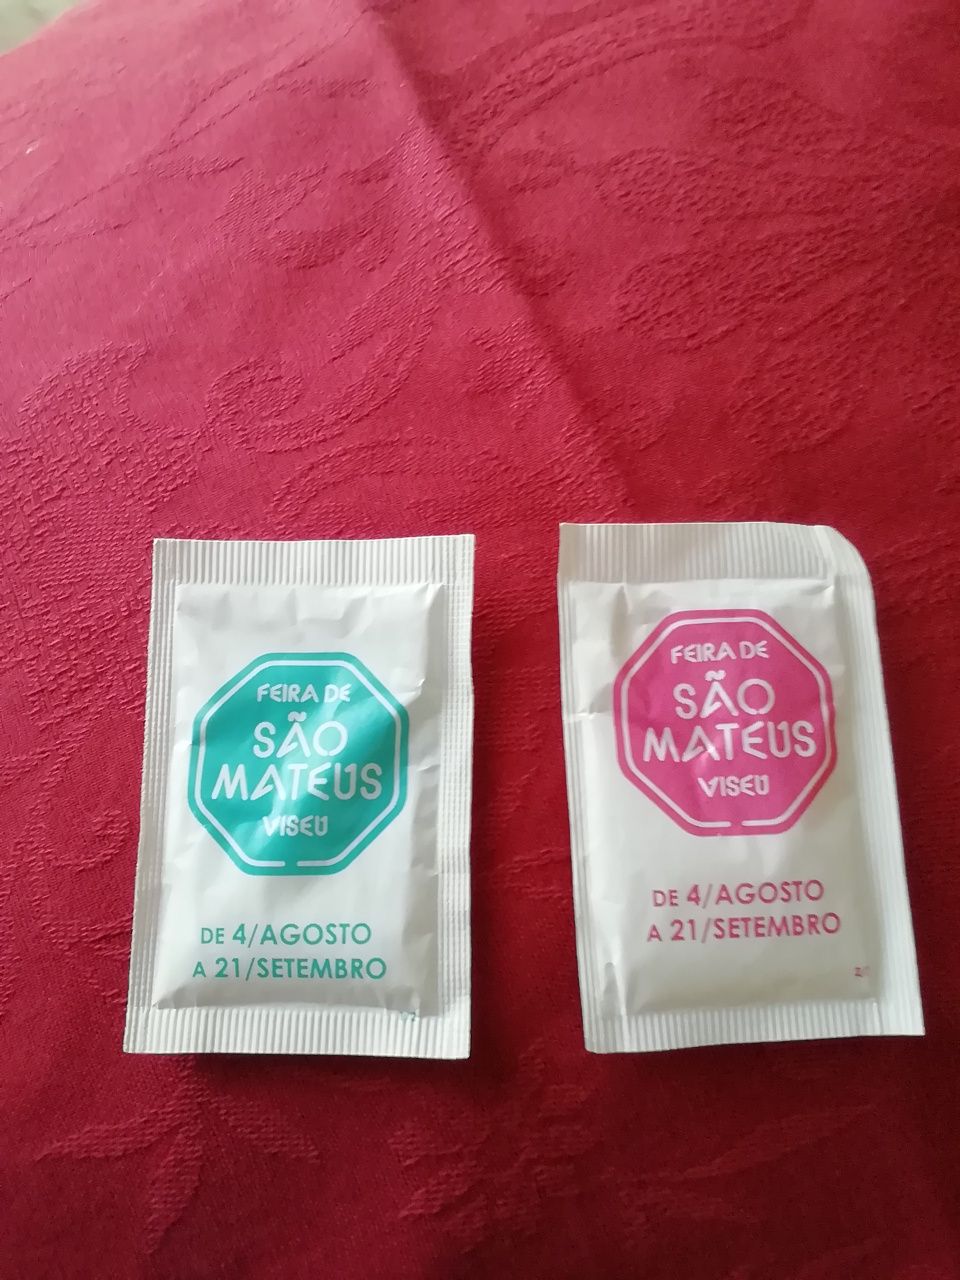 Pacotes de açúcar Feira de S. Mateus 2022, novos